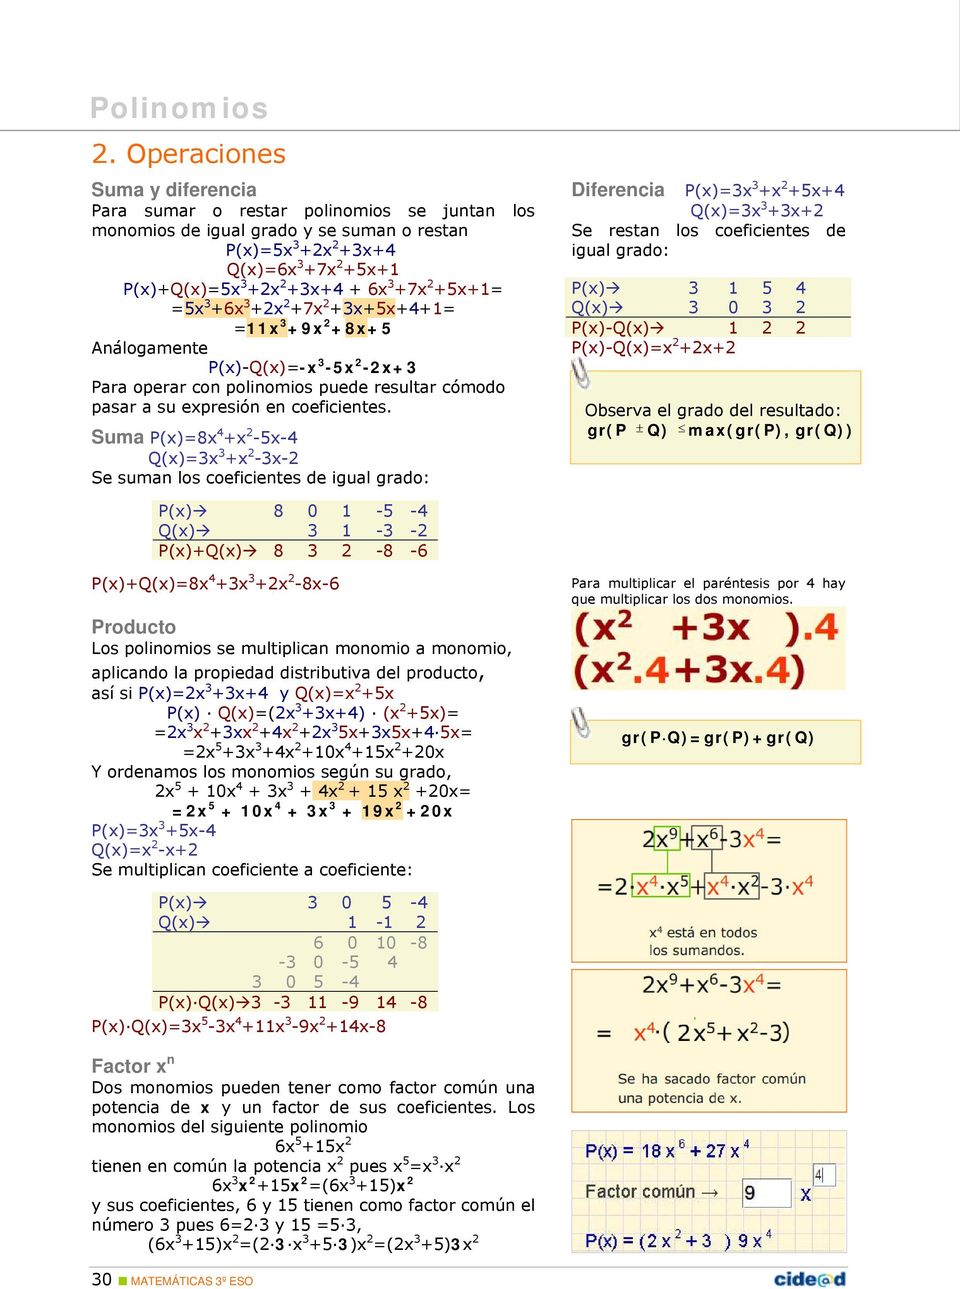 Suma P(x)=8x 4 +x 2-5x-4 Q(x)=3x 3 +x 2-3x-2 Se suman los coeficientes de igual grado: Diferencia P(x)=3x 3 +x 2 +5x+4 Q(x)=3x 3 +3x+2 Se restan los coeficientes de igual grado: P(x) 3 1 5 4 Q(x) 3 0